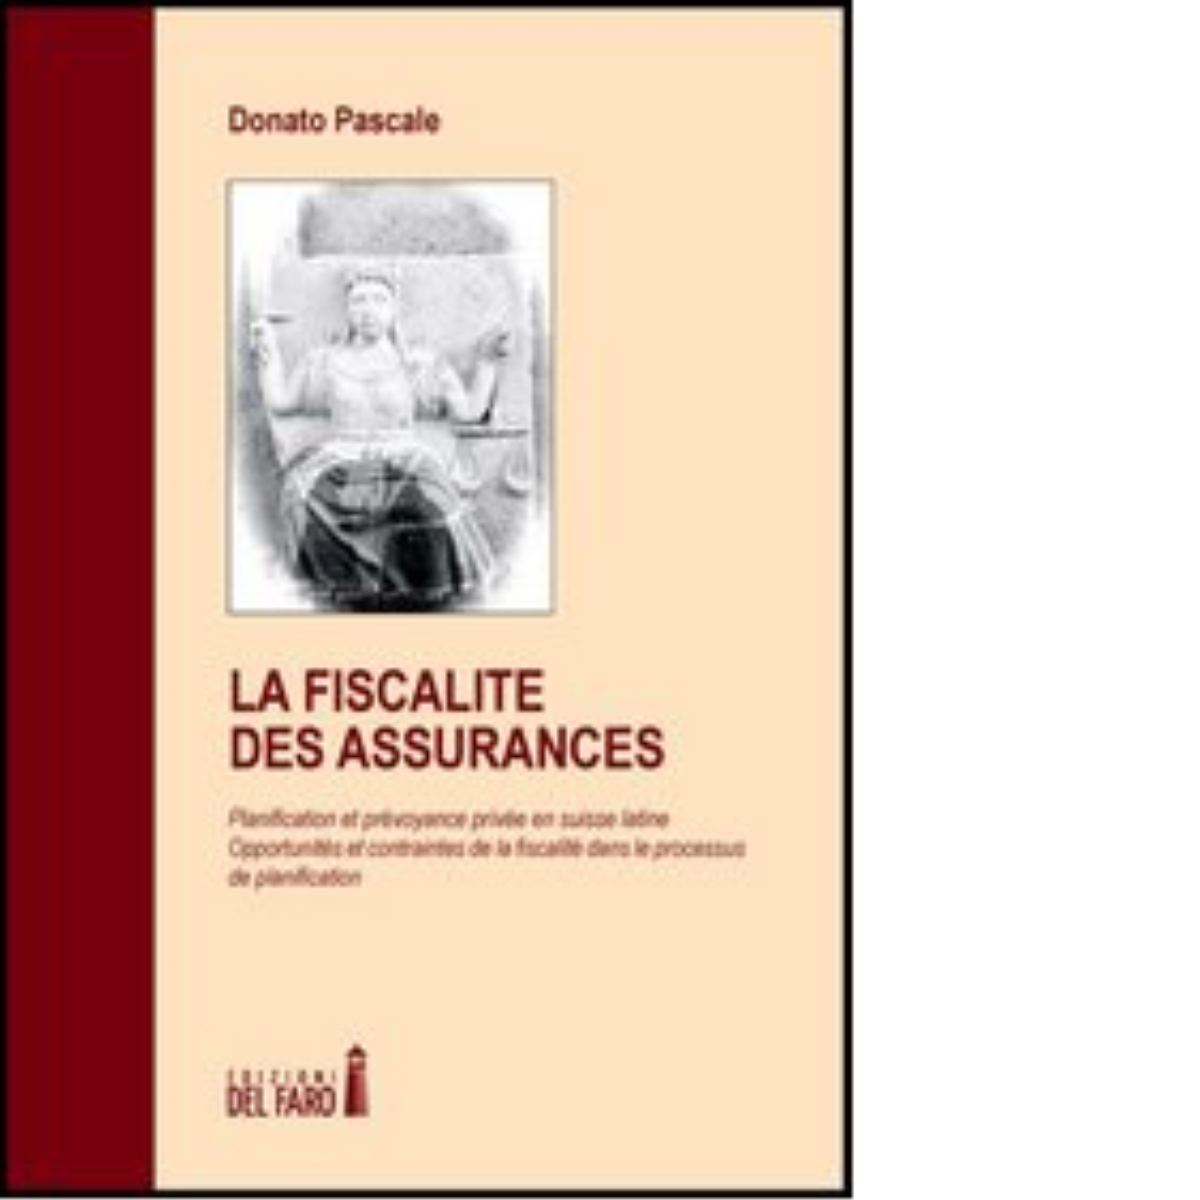 La fiscalit? des assurances - Donato Pascale - Edizioni Del Faro, 2022 libro usato